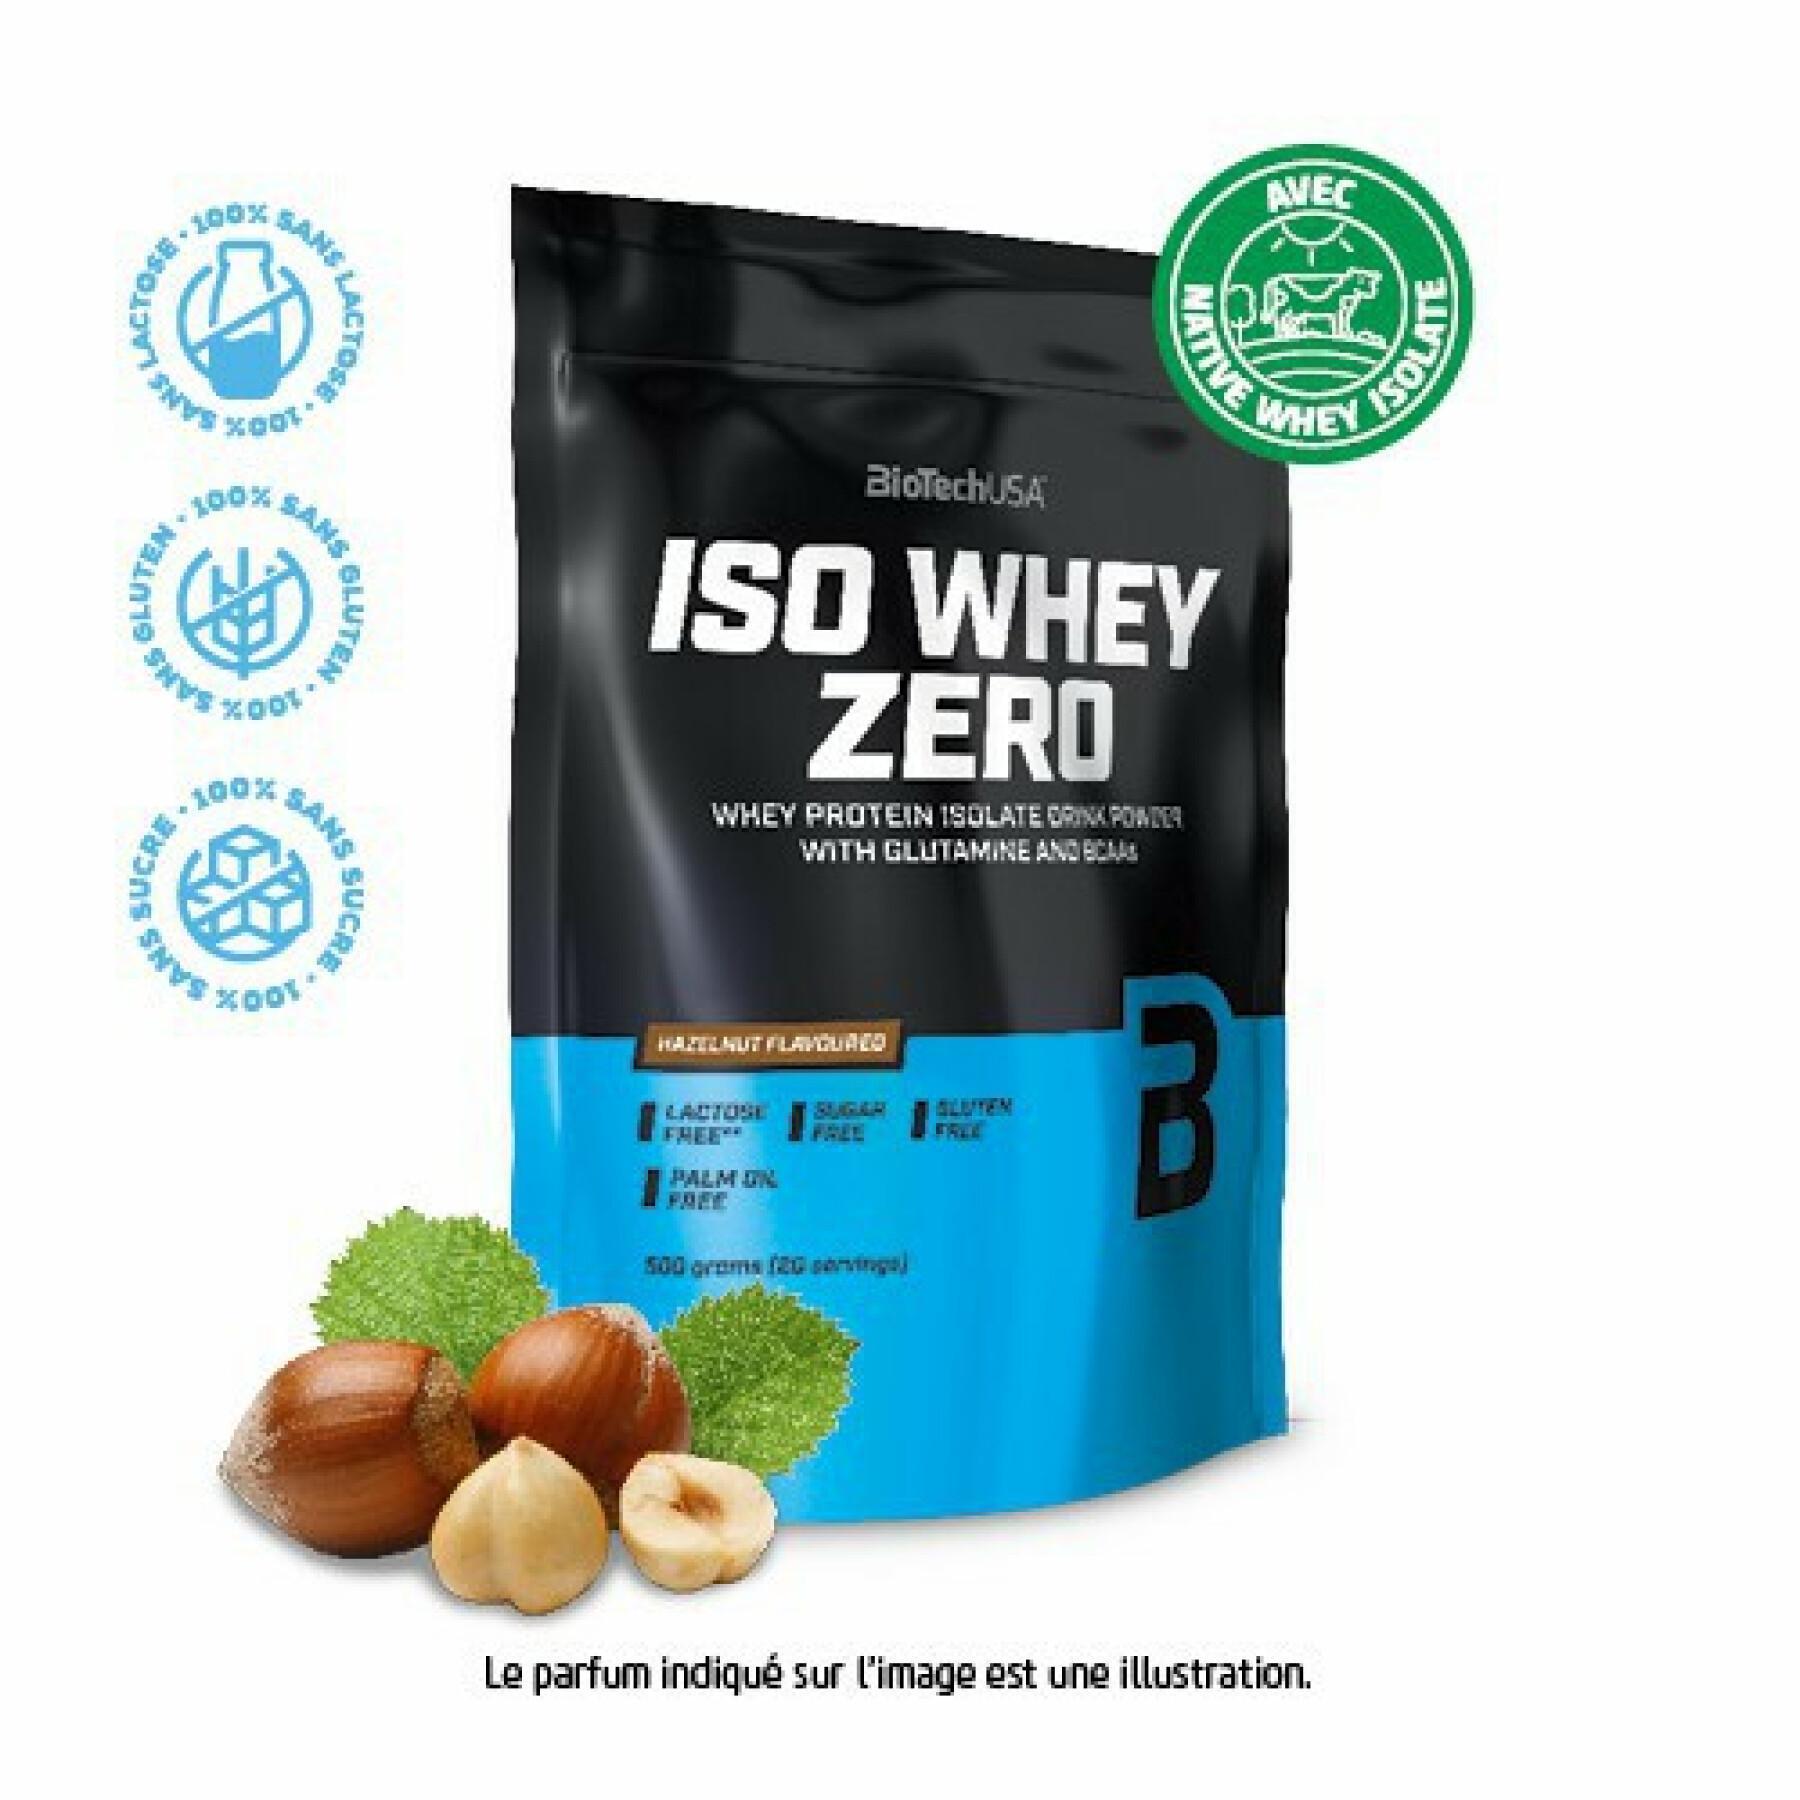 Pak van 10 zakjes proteïne Biotech USA iso whey zero lactose free - Noisette - 500g